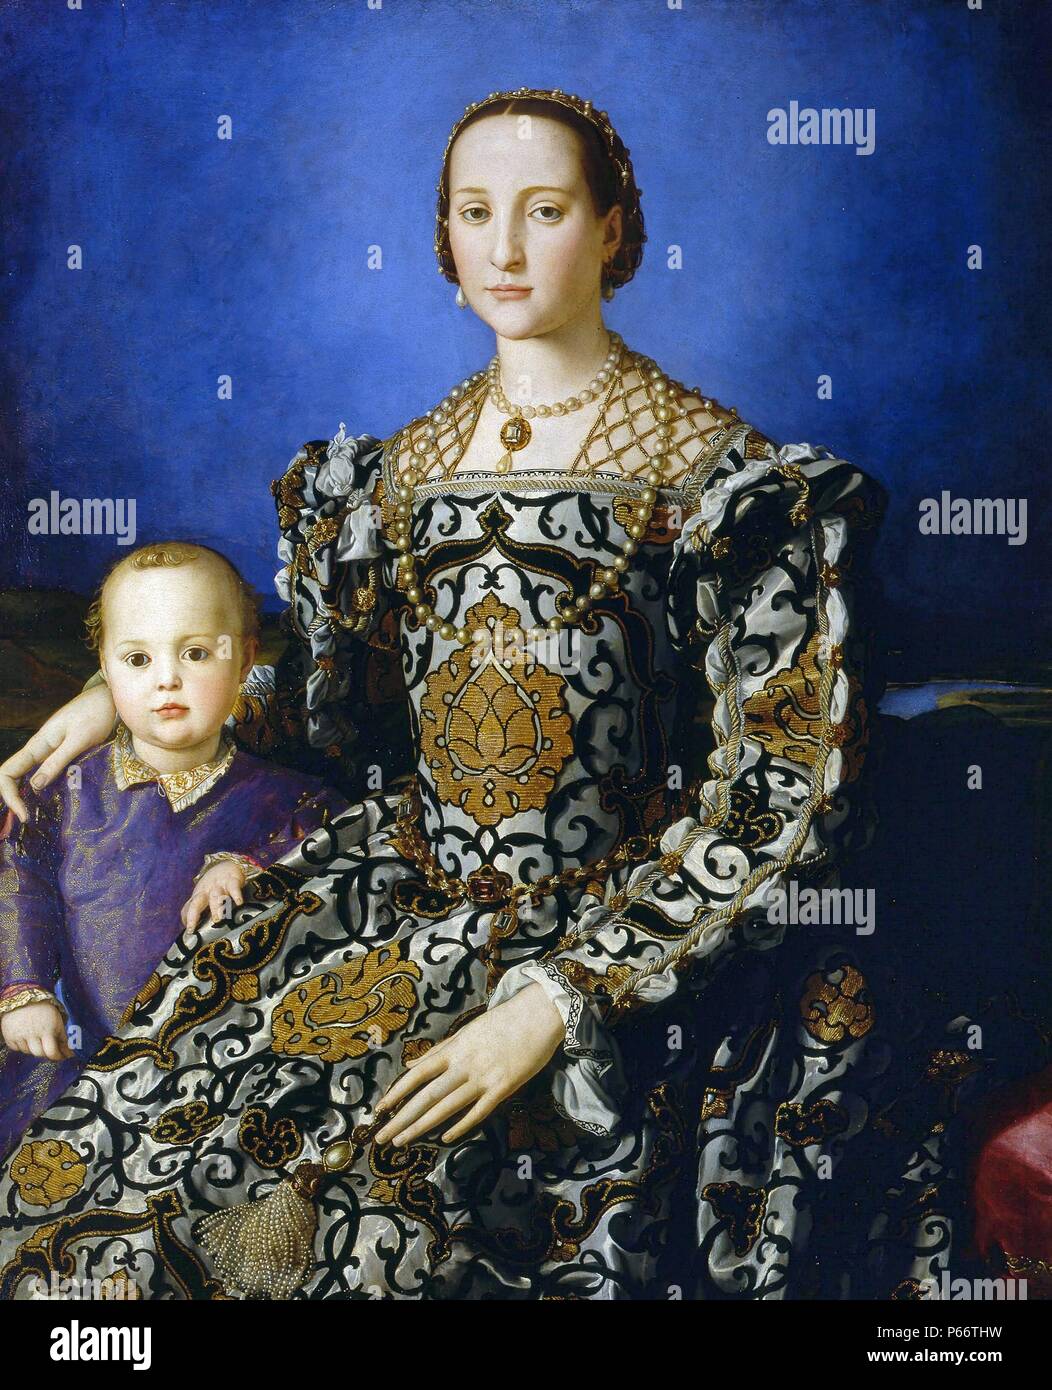 Das Portrait von Eleonore von Toledo und Ihr Sohn fertigen kann. 1545 von Agnolo di Cosimo Bronzino (1503 - 1572), Agnolo Bronzino war ein italienischer manieristischen Maler aus Florenz. Stockfoto